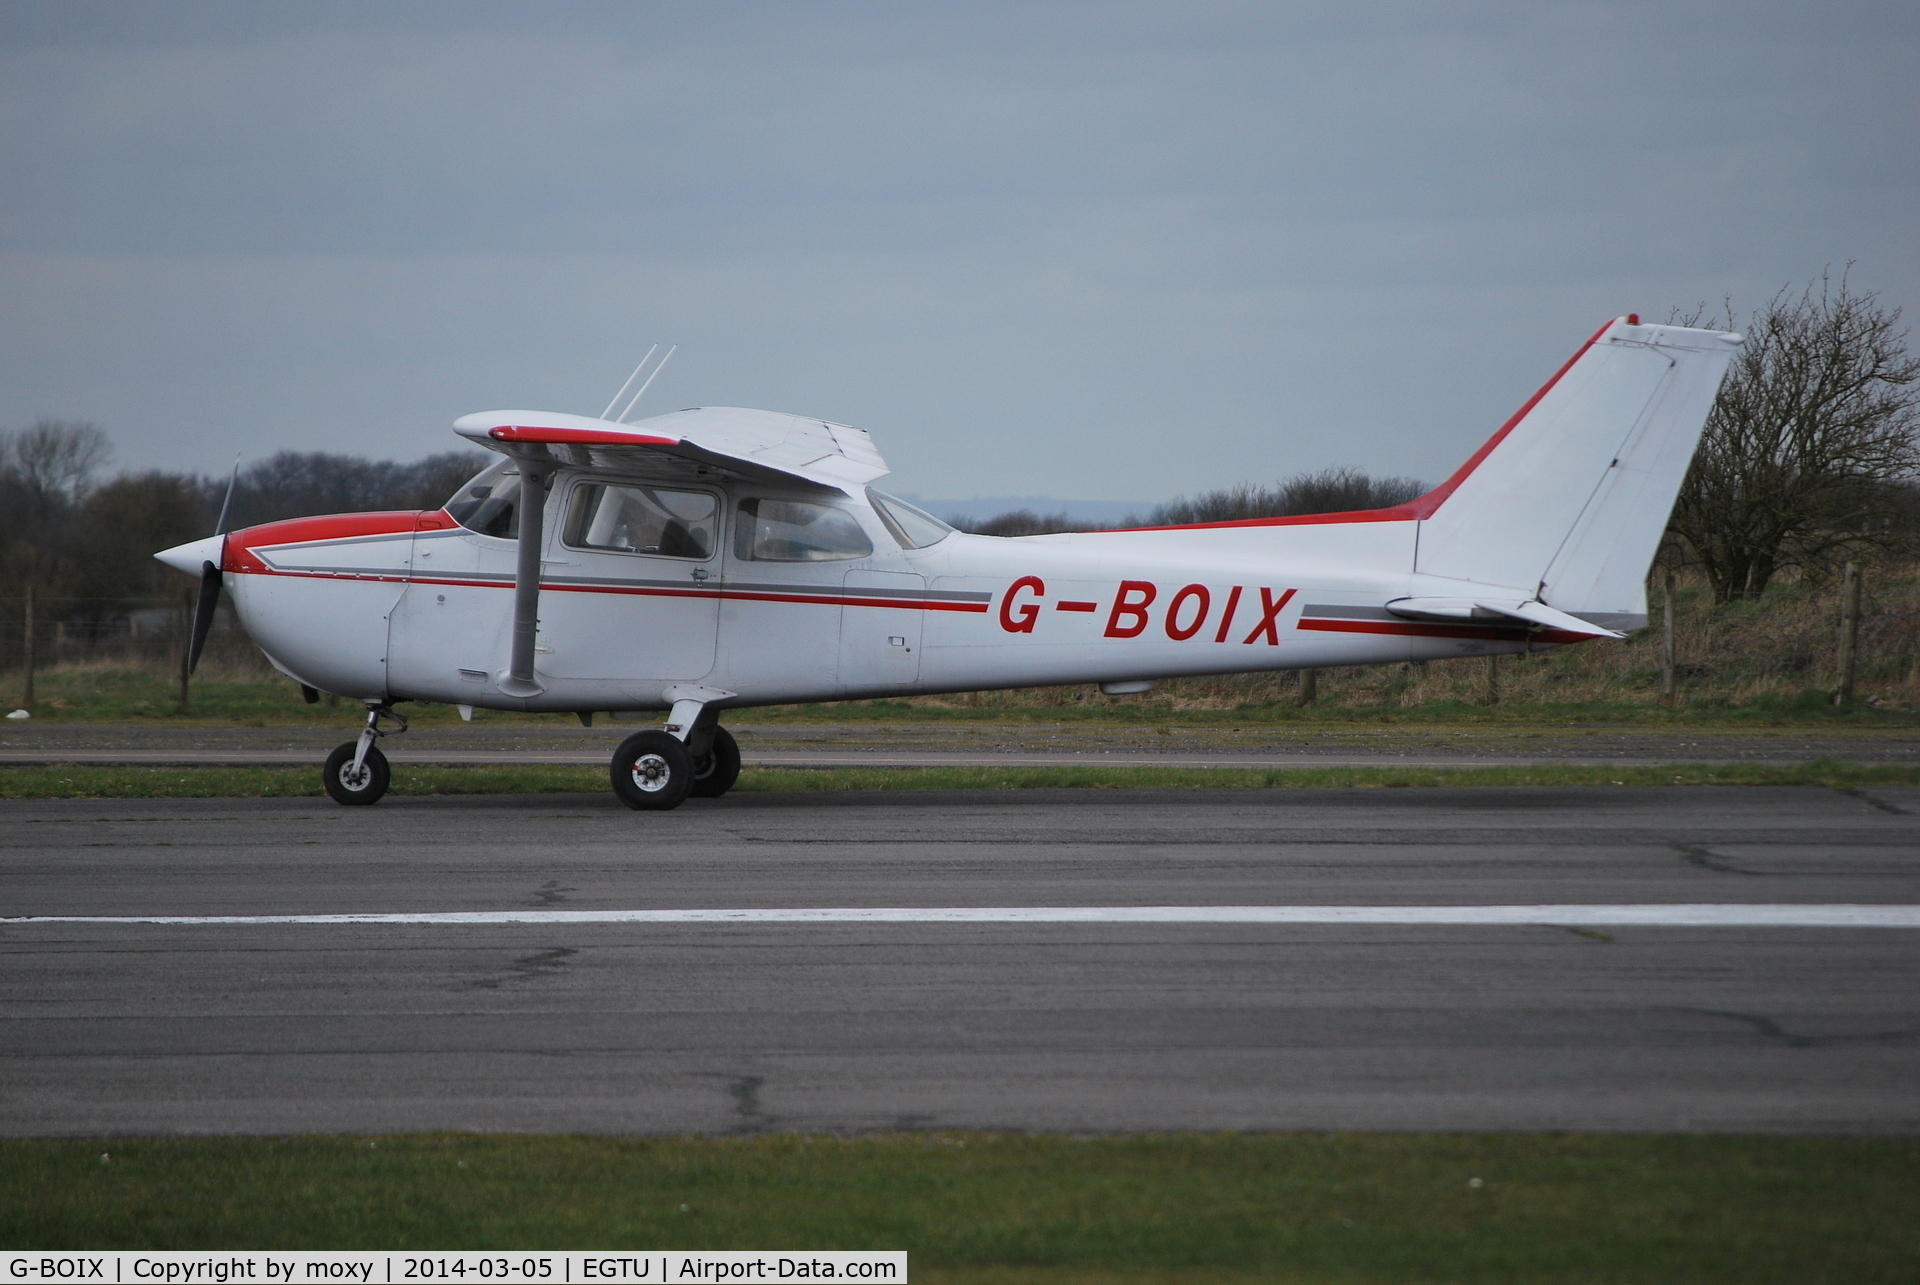 G-BOIX, 1979 Cessna 172N C/N 172-71206, Cessna 172N at Dunkeswell. Ex C-GMMX